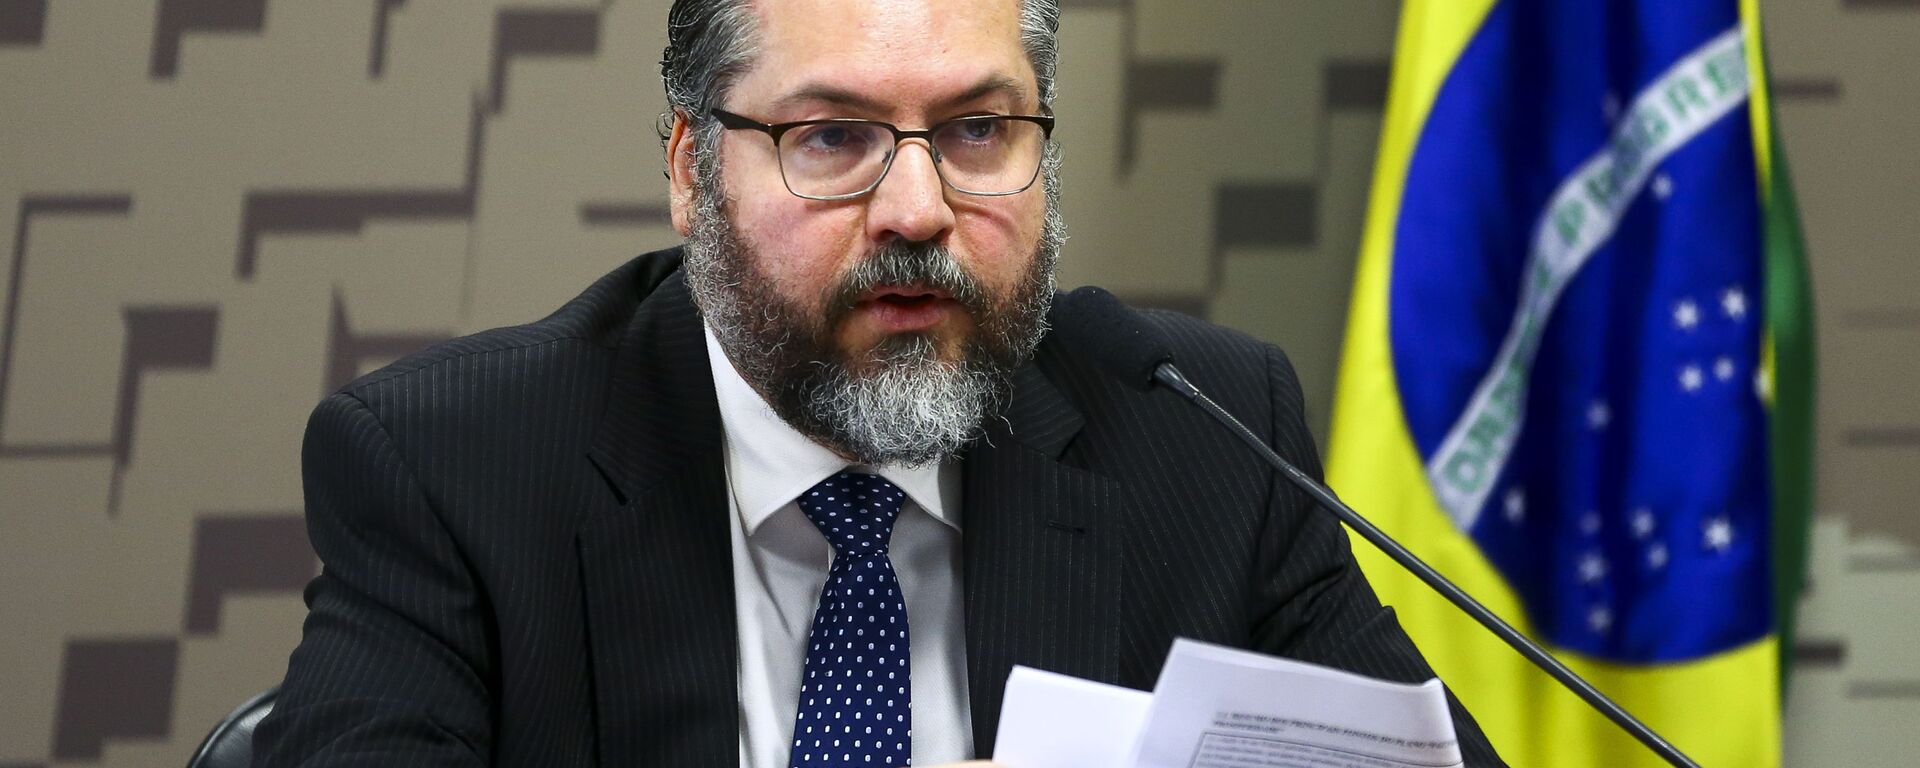 O ministro das Relações Exteriores, Ernesto Araújo, durante audiência pública na Comissão de Relações Exteriores e Defesa Nacional do Senado - Sputnik Brasil, 1920, 29.03.2021